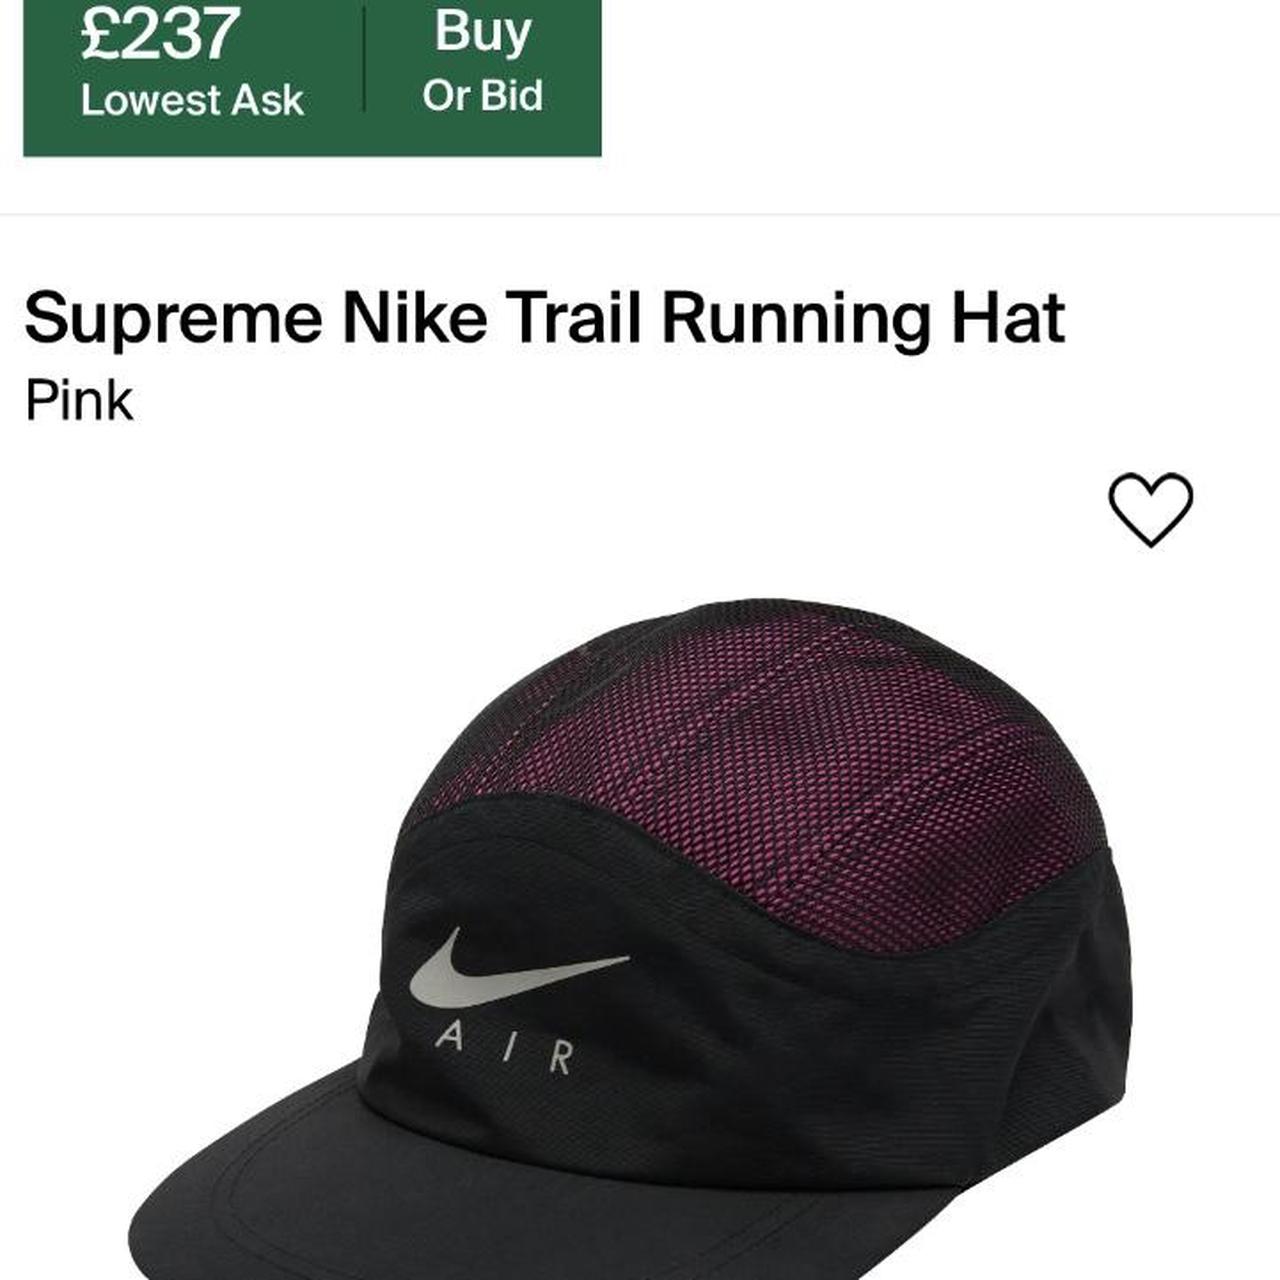 Supreme x Nike Trail Running Hat FW17 Pink Cap 3M - Depop